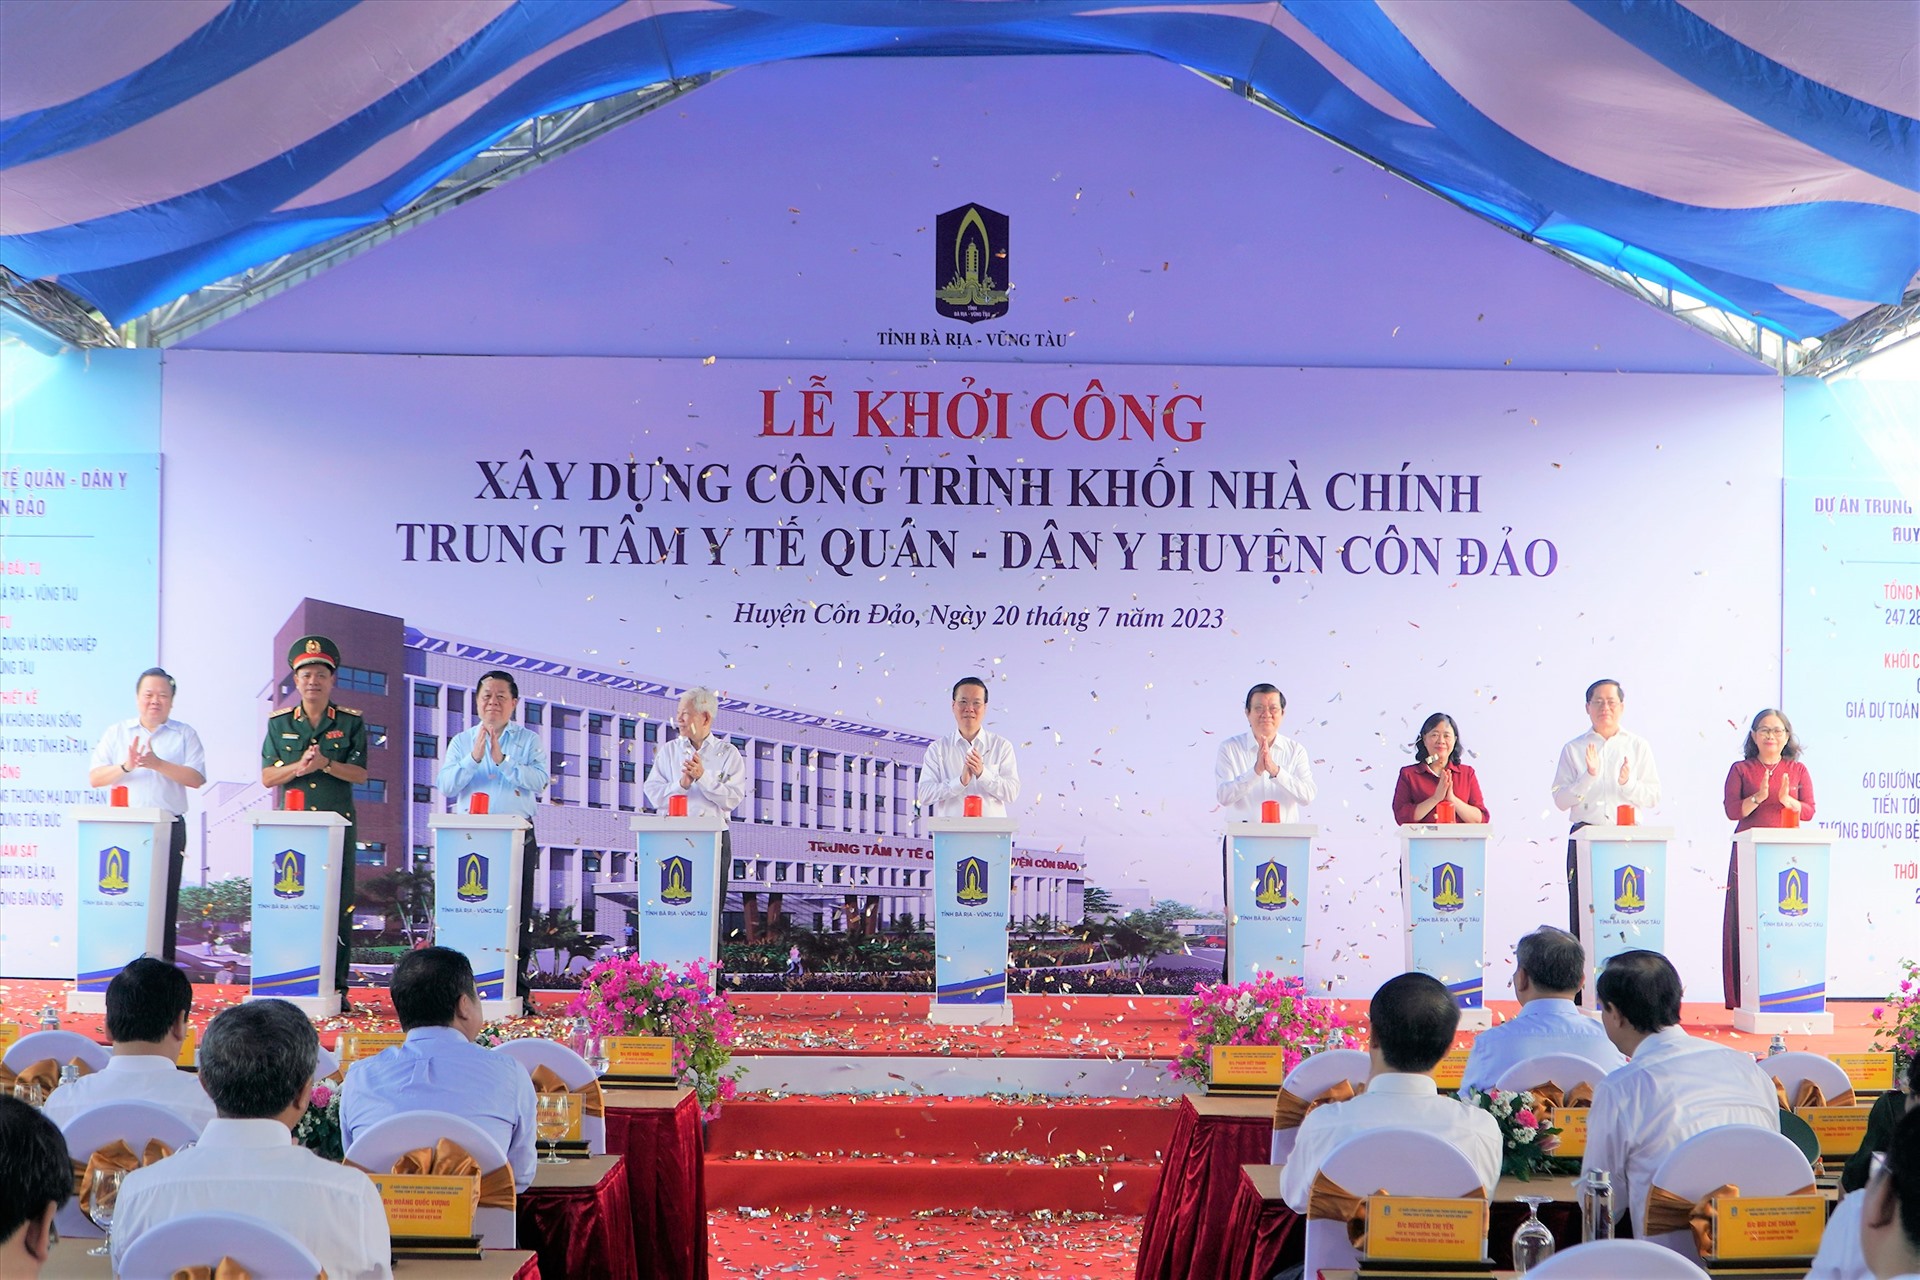 Chủ tịch nước bấm nút khởi công Trung tâm Quân dân Y huyện Côn Đảo. Ảnh: Mạnh Thắng